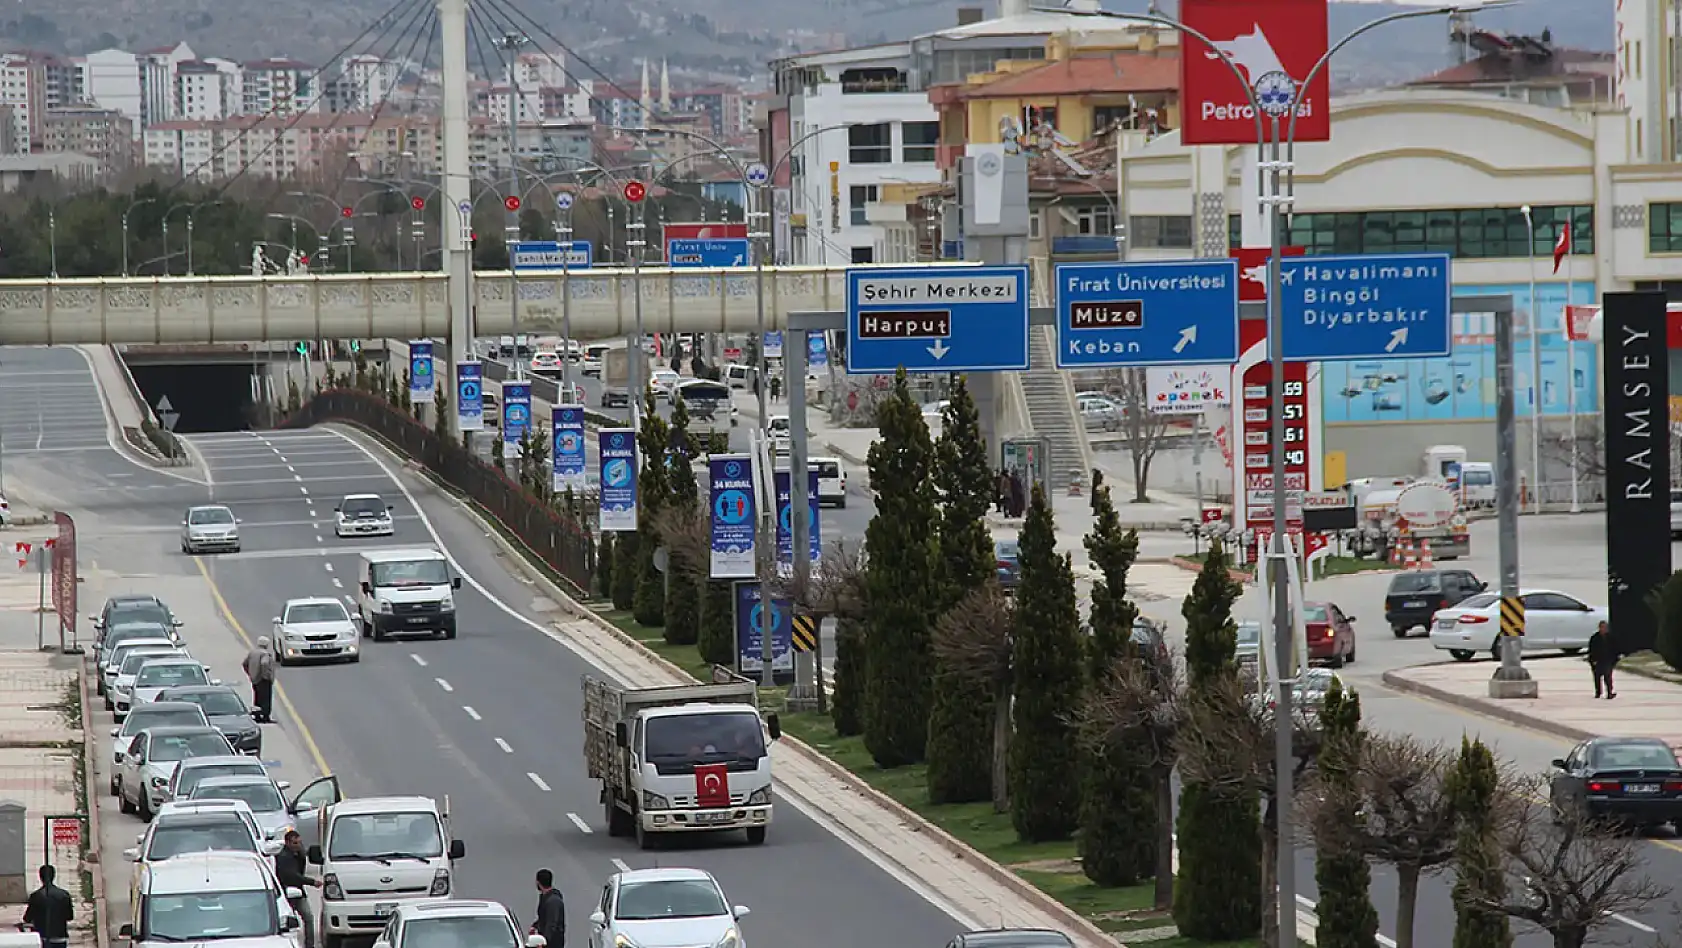 Elazığ'da Araç Sahiplerini Üzen Karar!